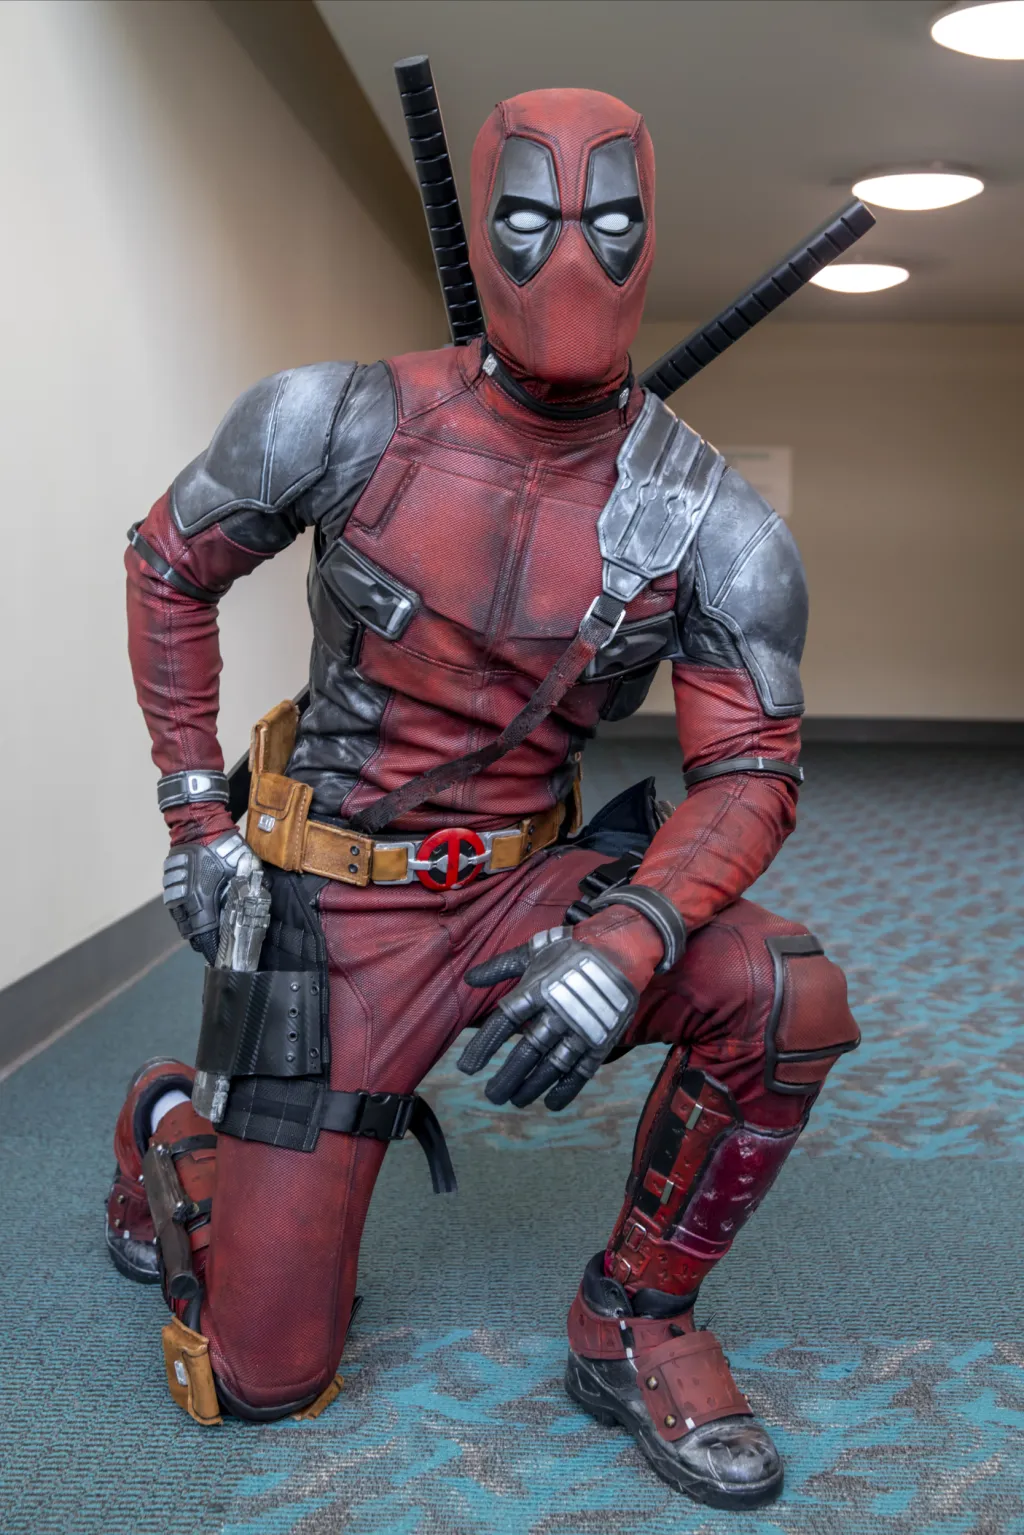 Kyle Knox pózuje v převleku Deadpoola, hrdiny proslulého hlavně nekorektním humorem